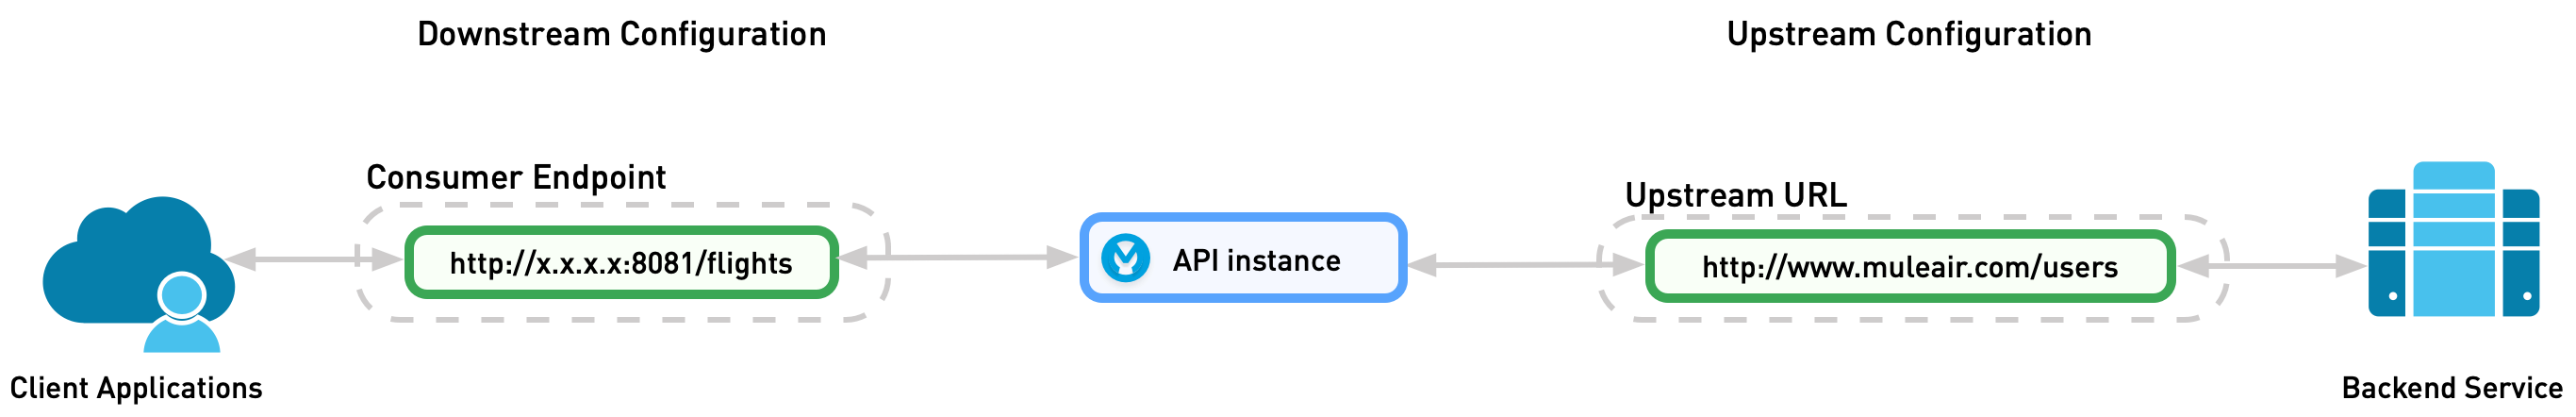 API インスタンスは、アップストリーム設定とダウンストリーム設定の間のゲートウェイにデプロイされます。